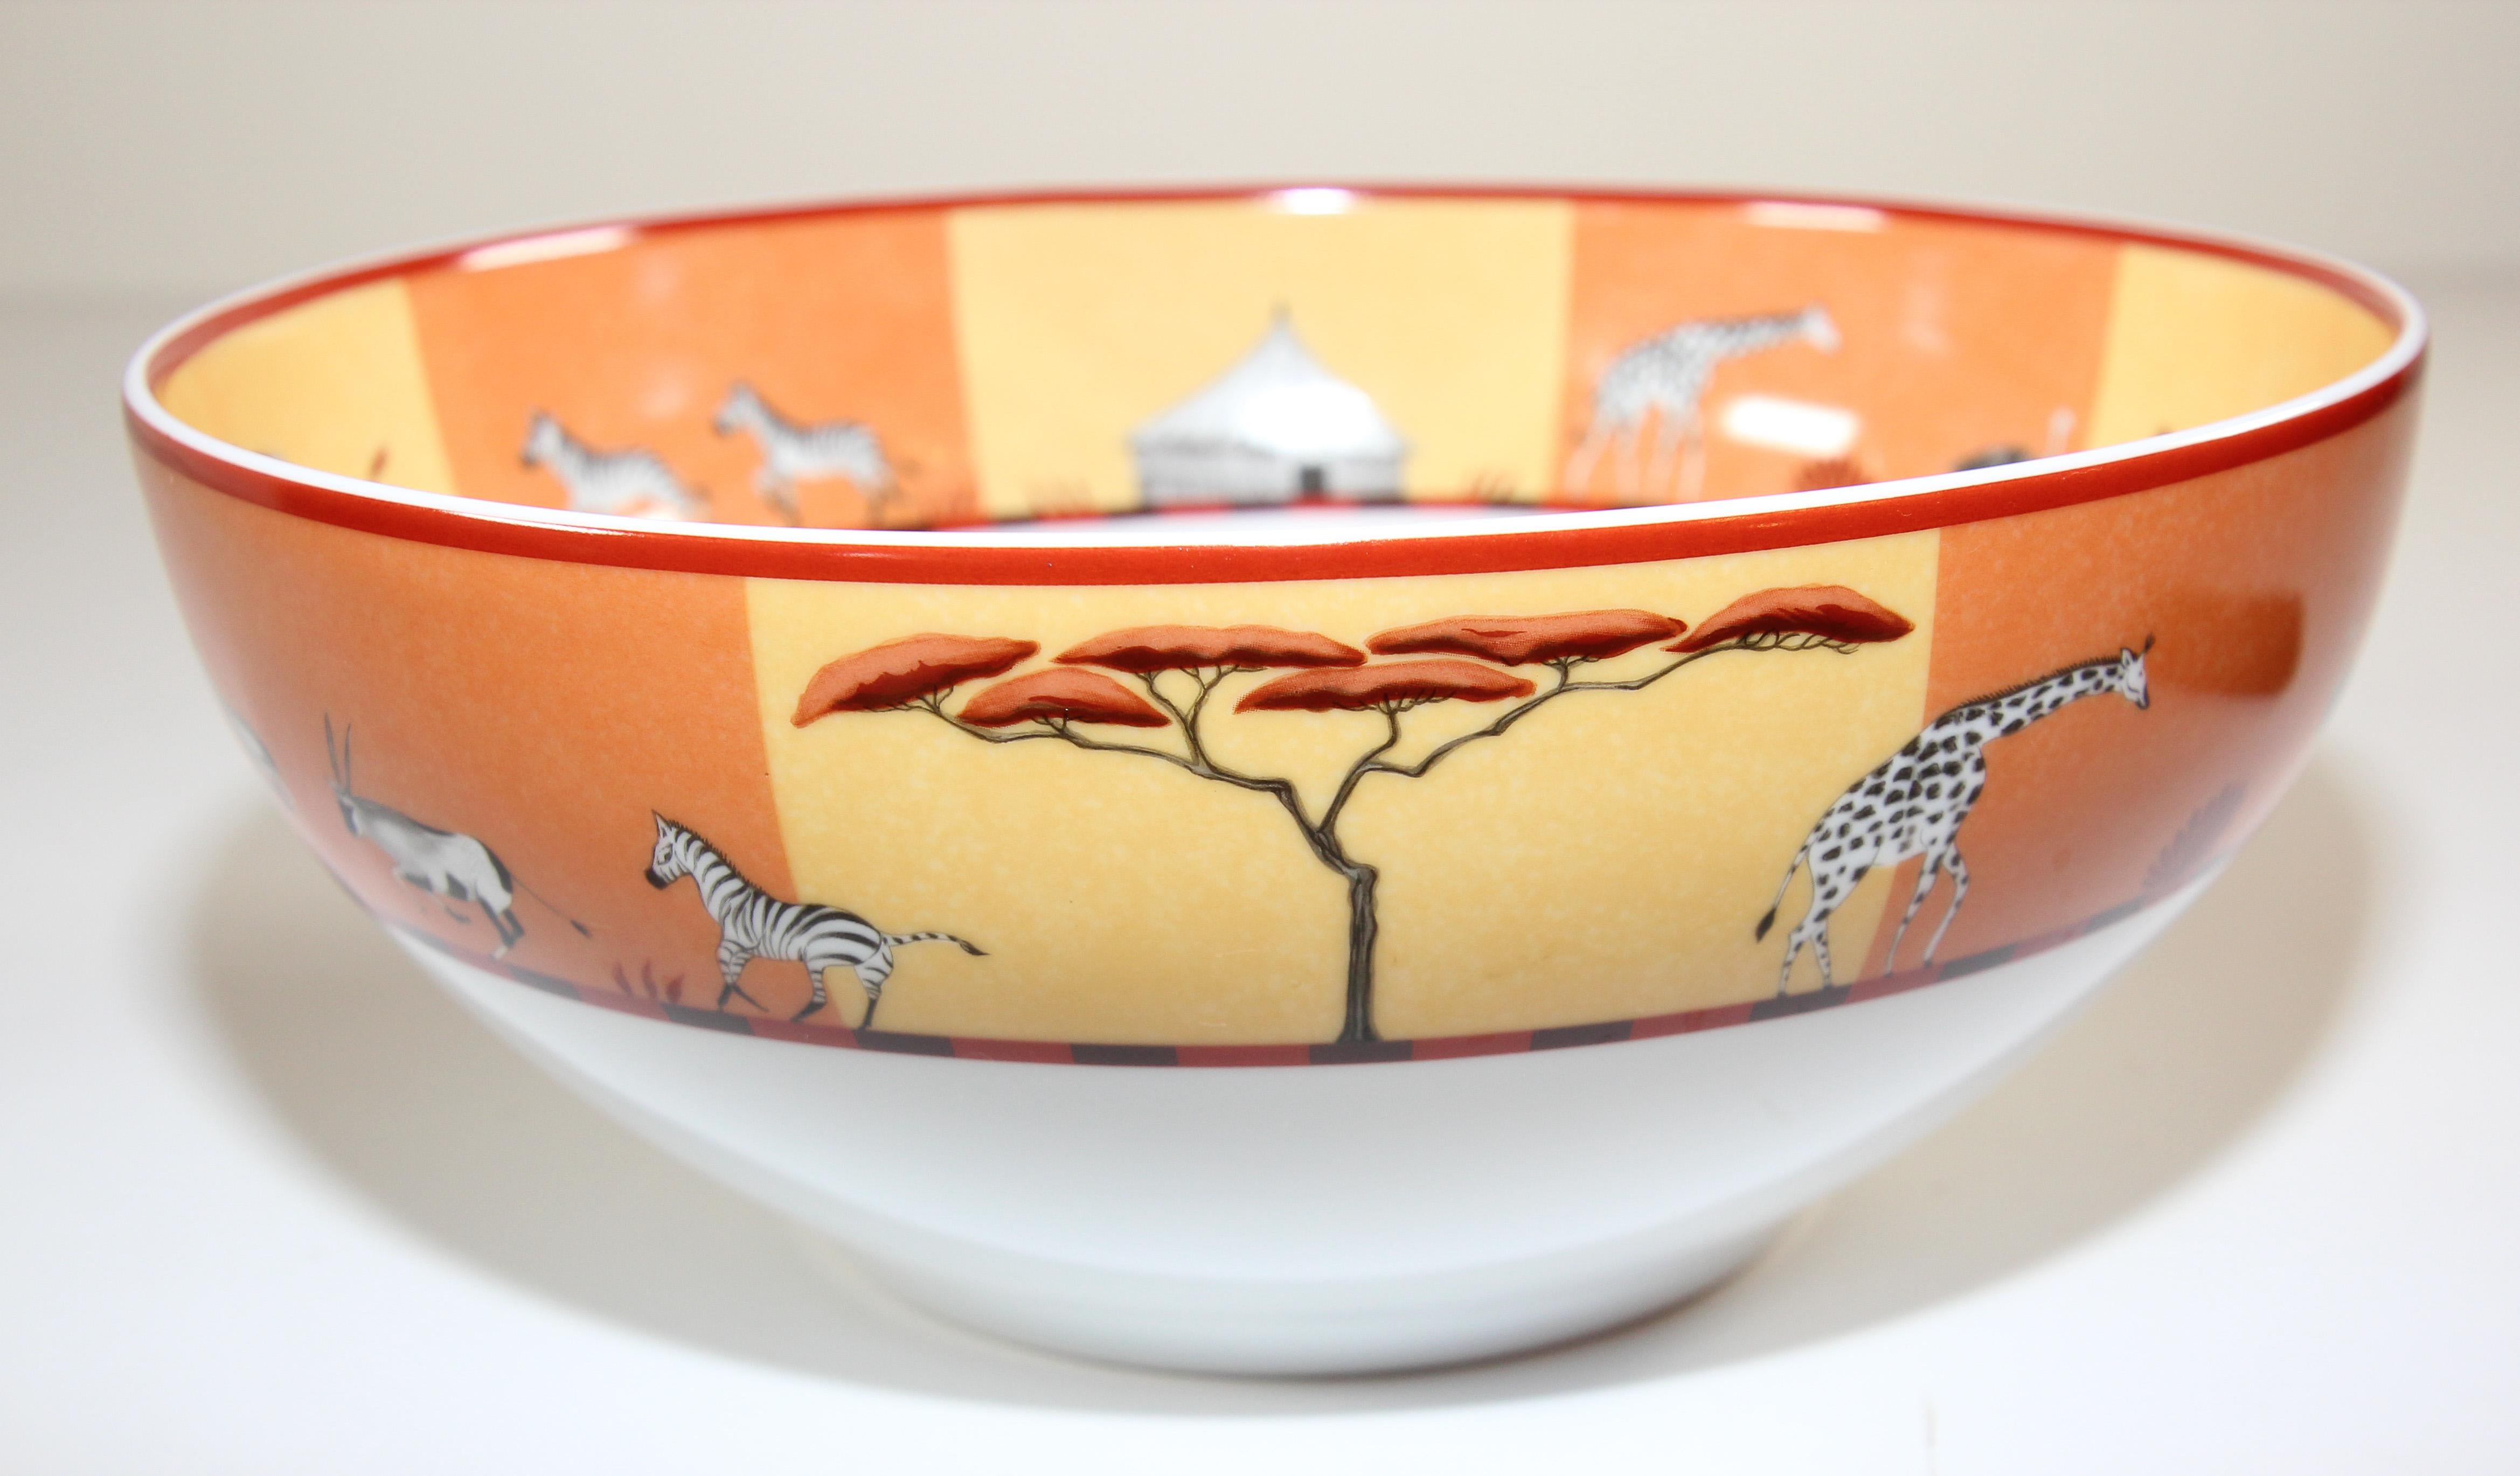 Hand-Crafted Hermès Africa Orange Large Porcelain Salad Bowl with Safari Design